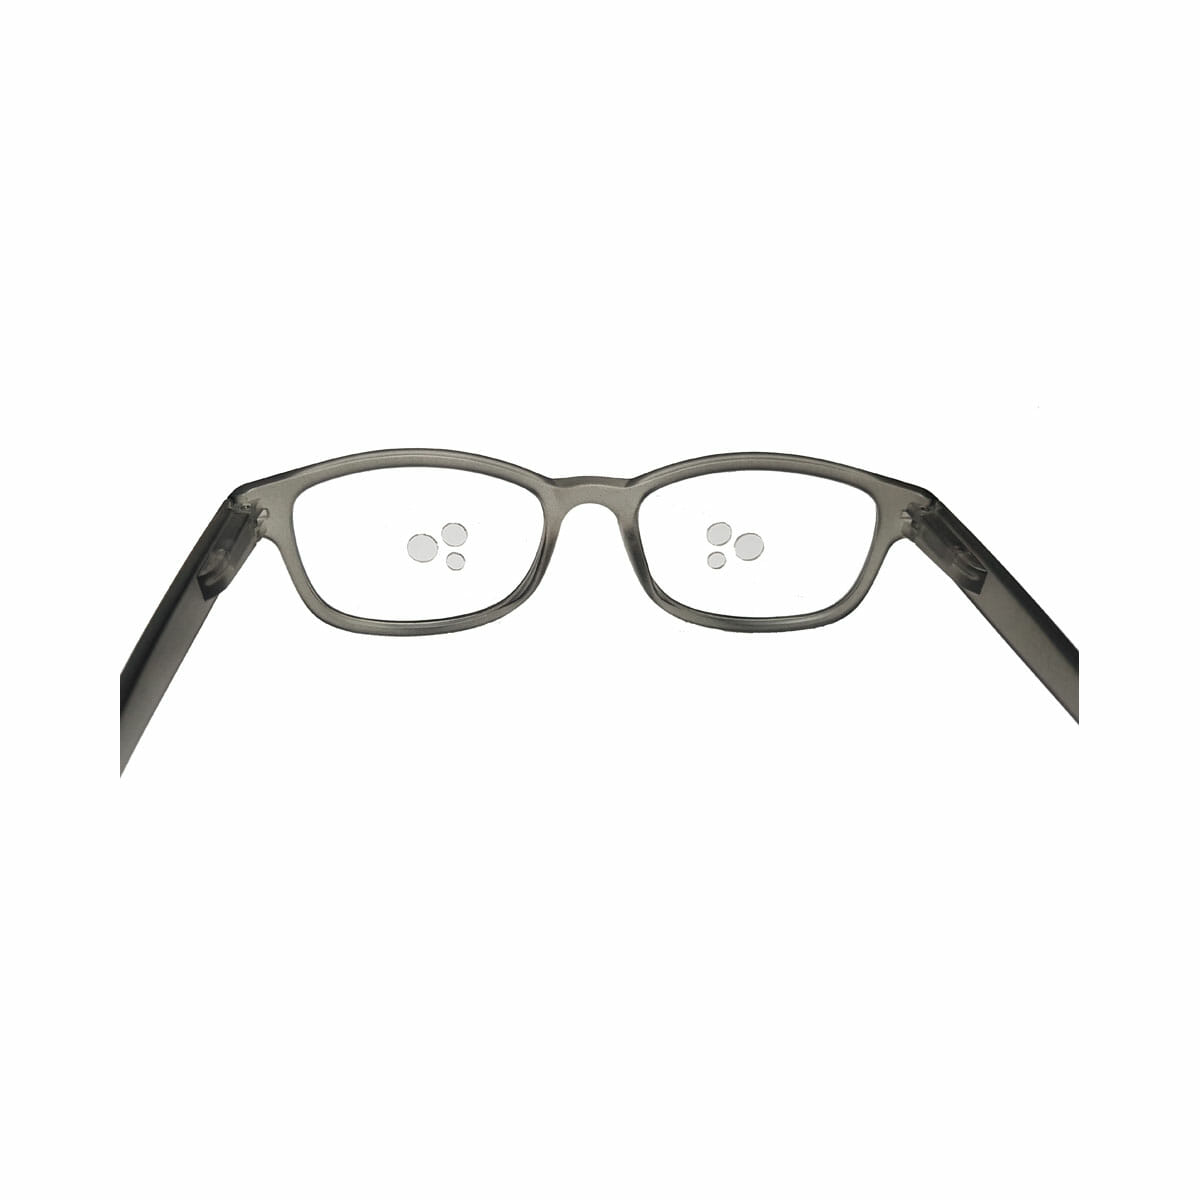 registreren Piepen Veel Druppelbril: Eenvoudig de ogen druppelen | Low vision Shop